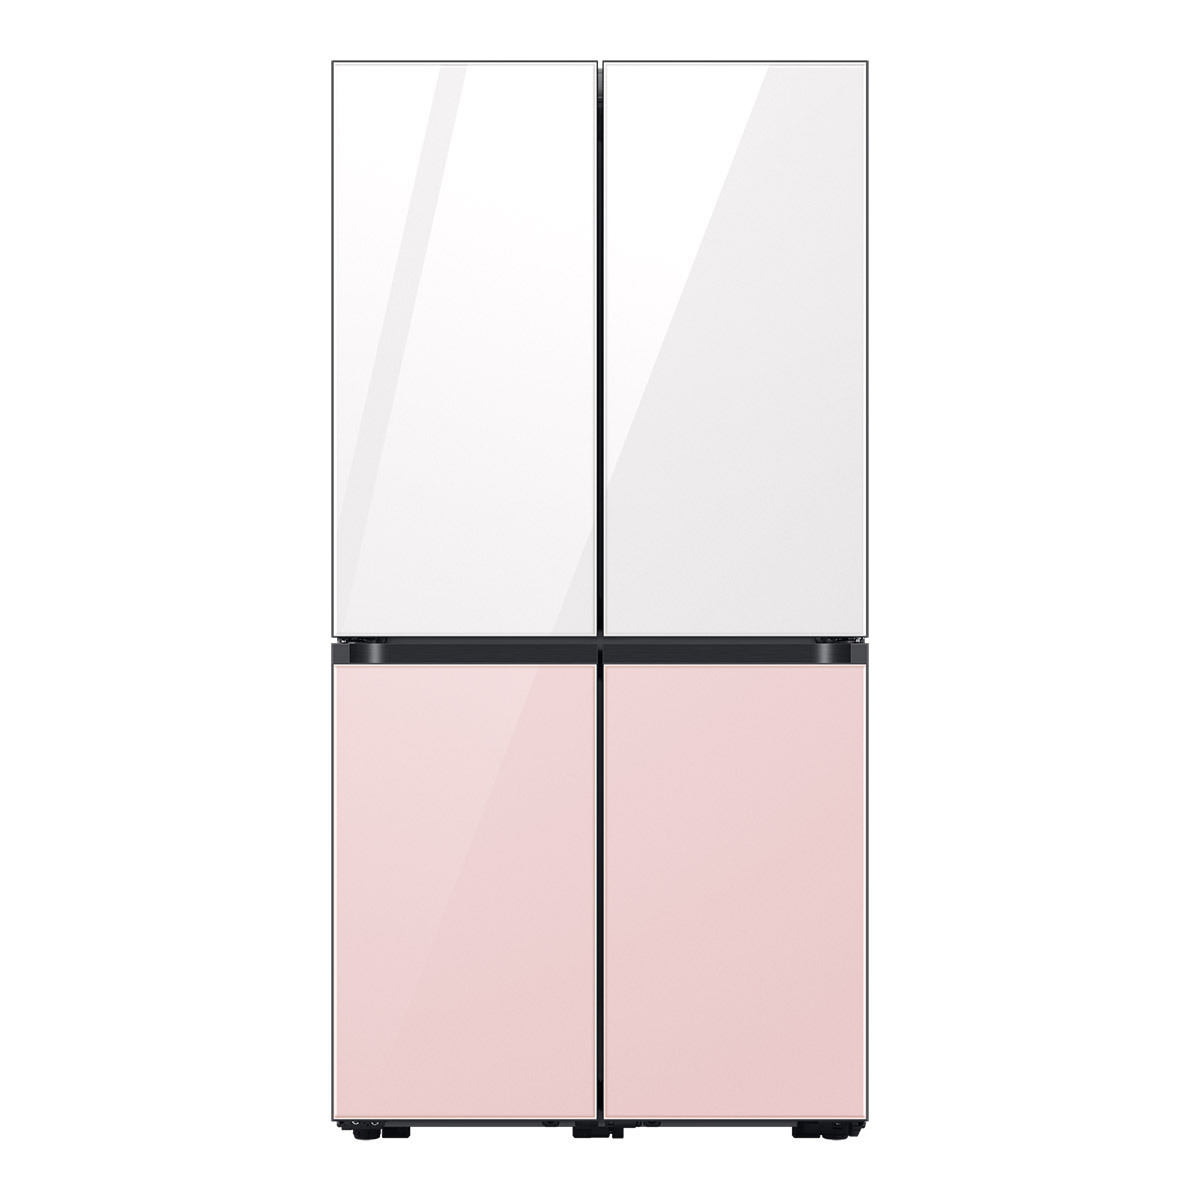 삼성 비스포크 냉장고 848L, 글램화이트핑크